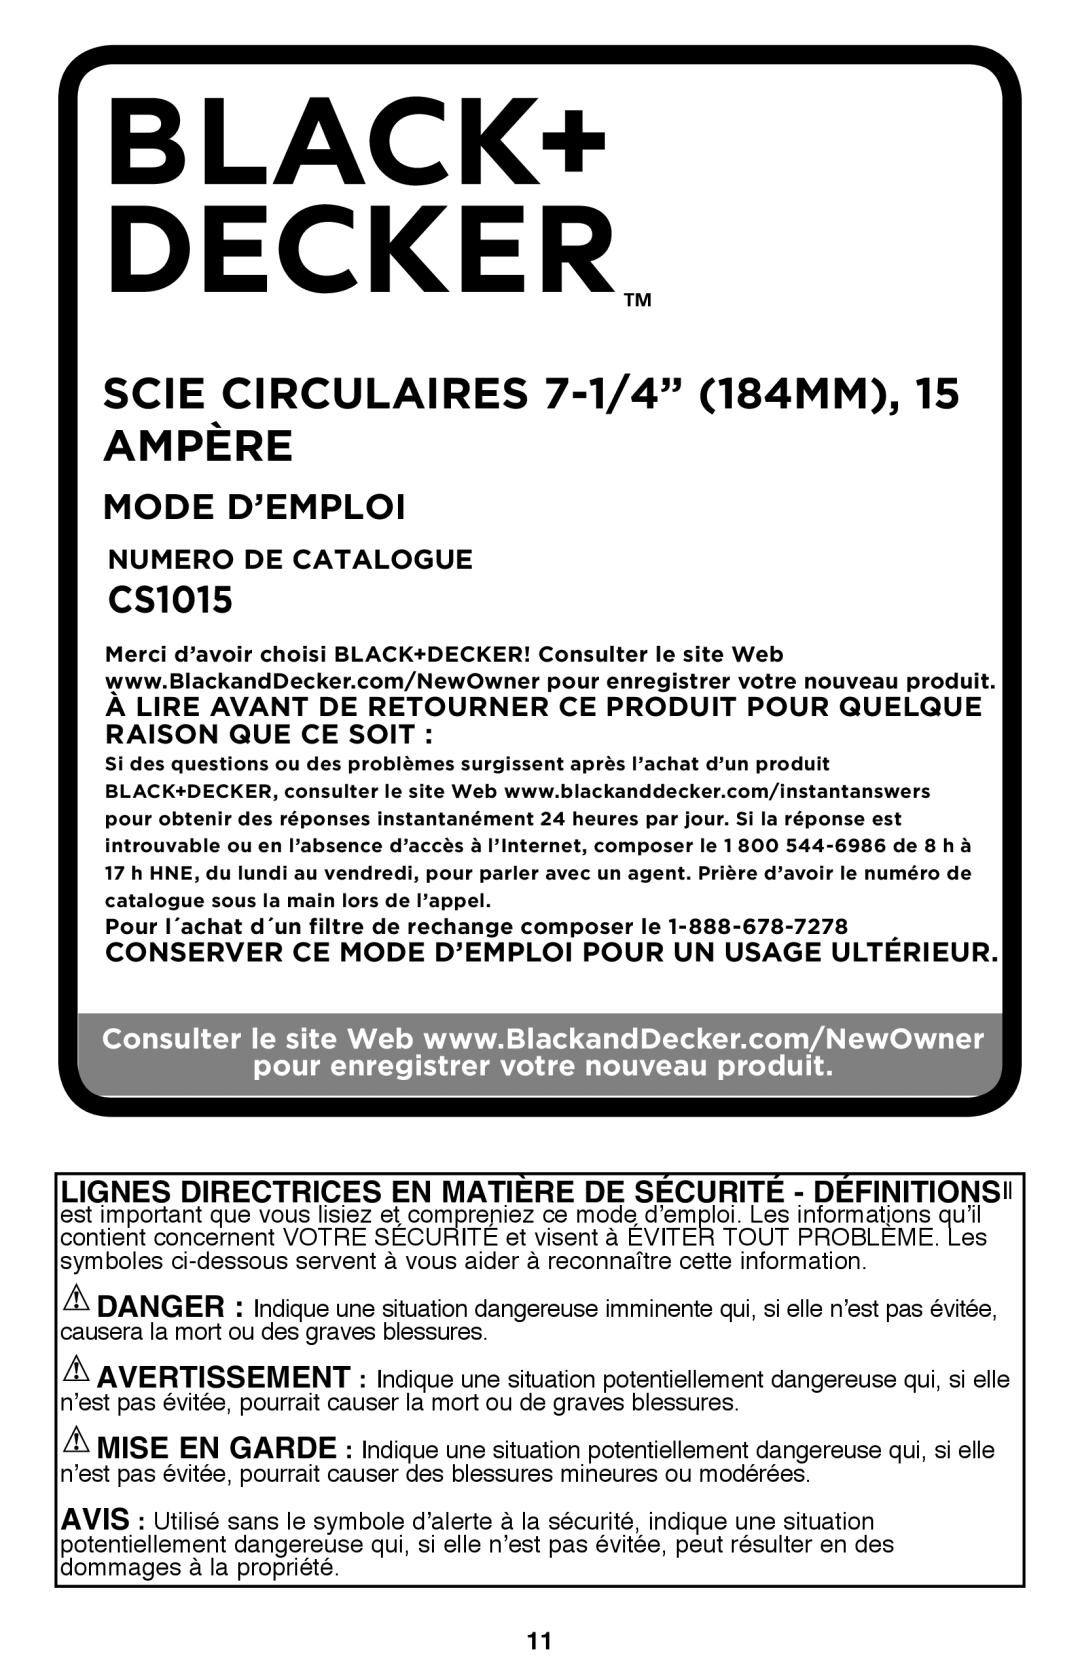 Black & Decker CS1015 scie circulaires 7-1/4” 184mm, 15 Ampère, Mode D’Emploi, pour enregistrer votre nouveau produit 